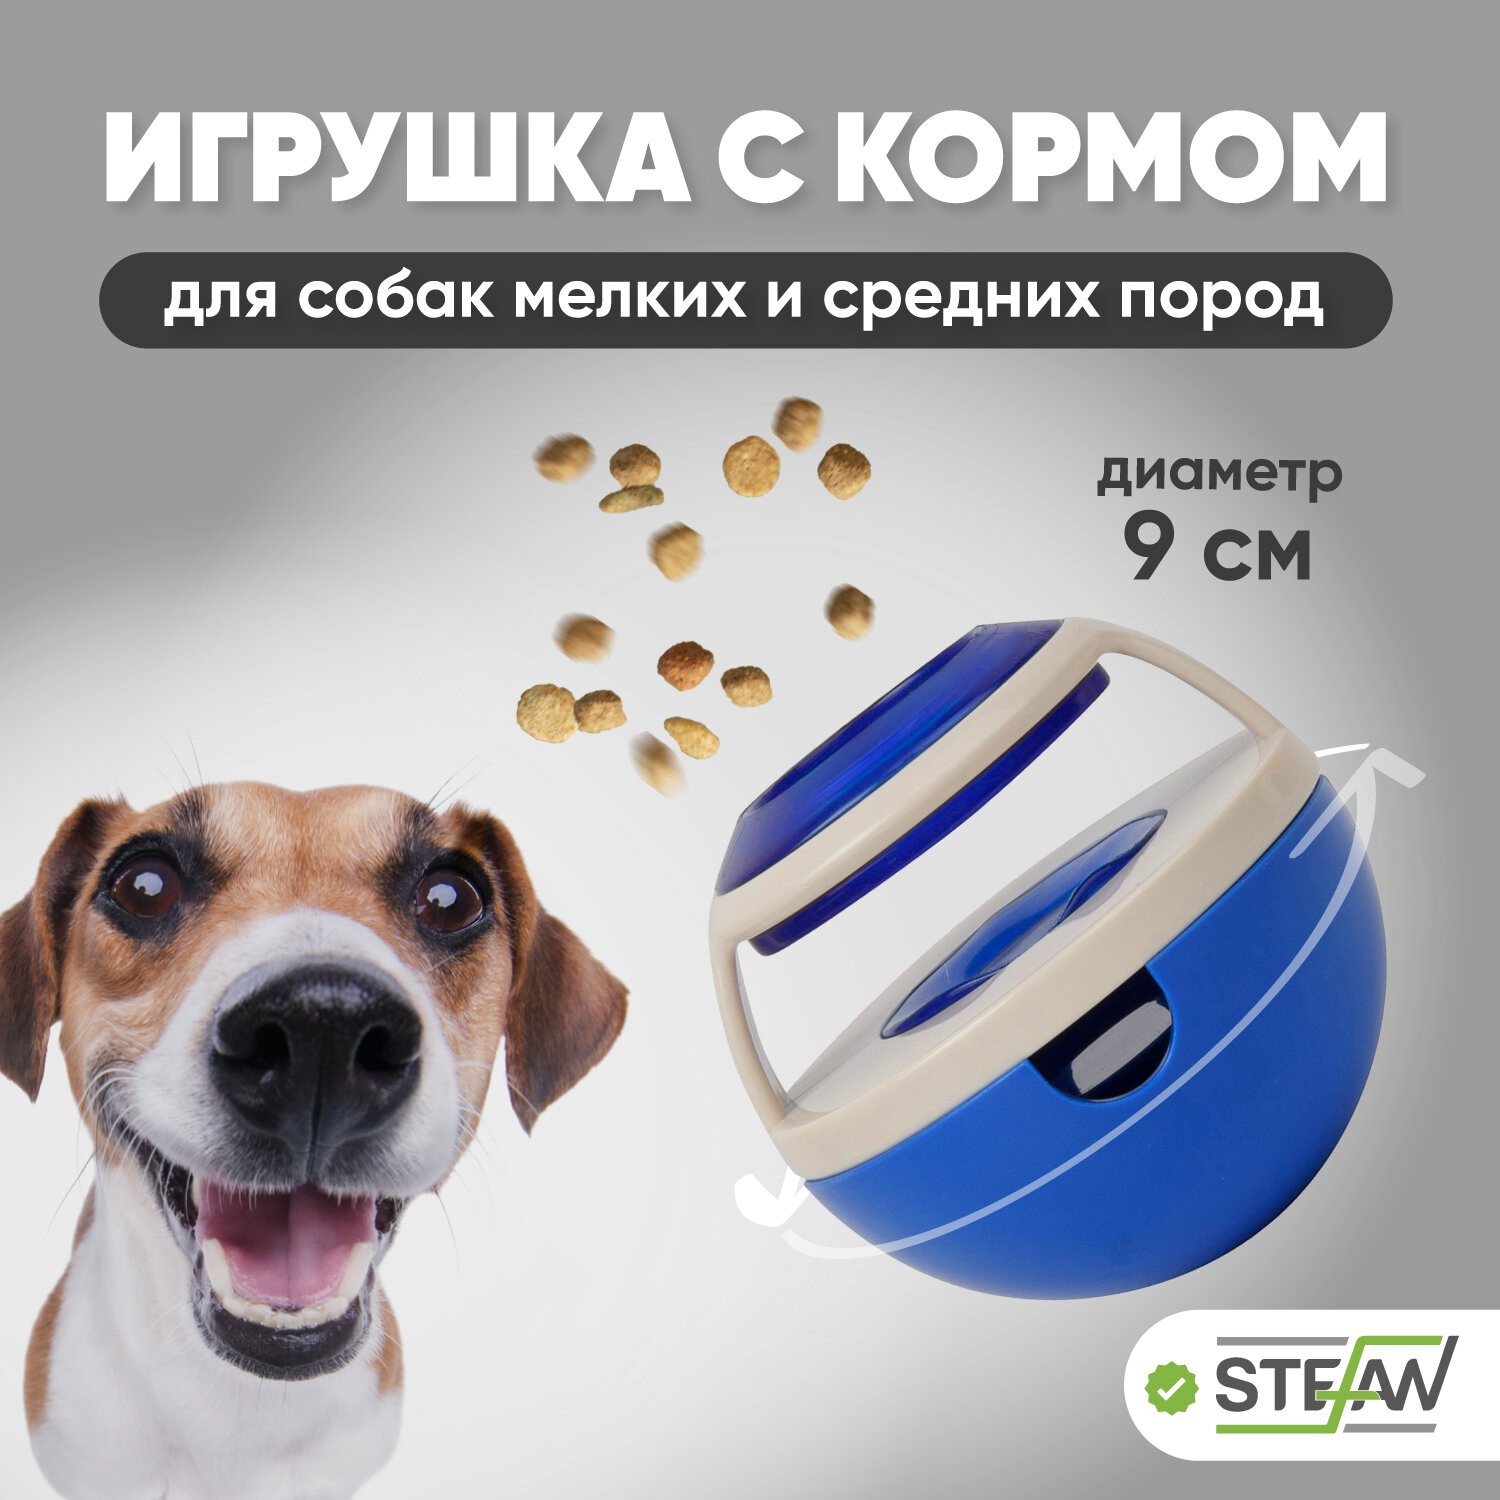 Интерактивная игрушка для животных для медленного поедания корма STEFAN (Штефан), неваляшка цвет голубой, TY5025